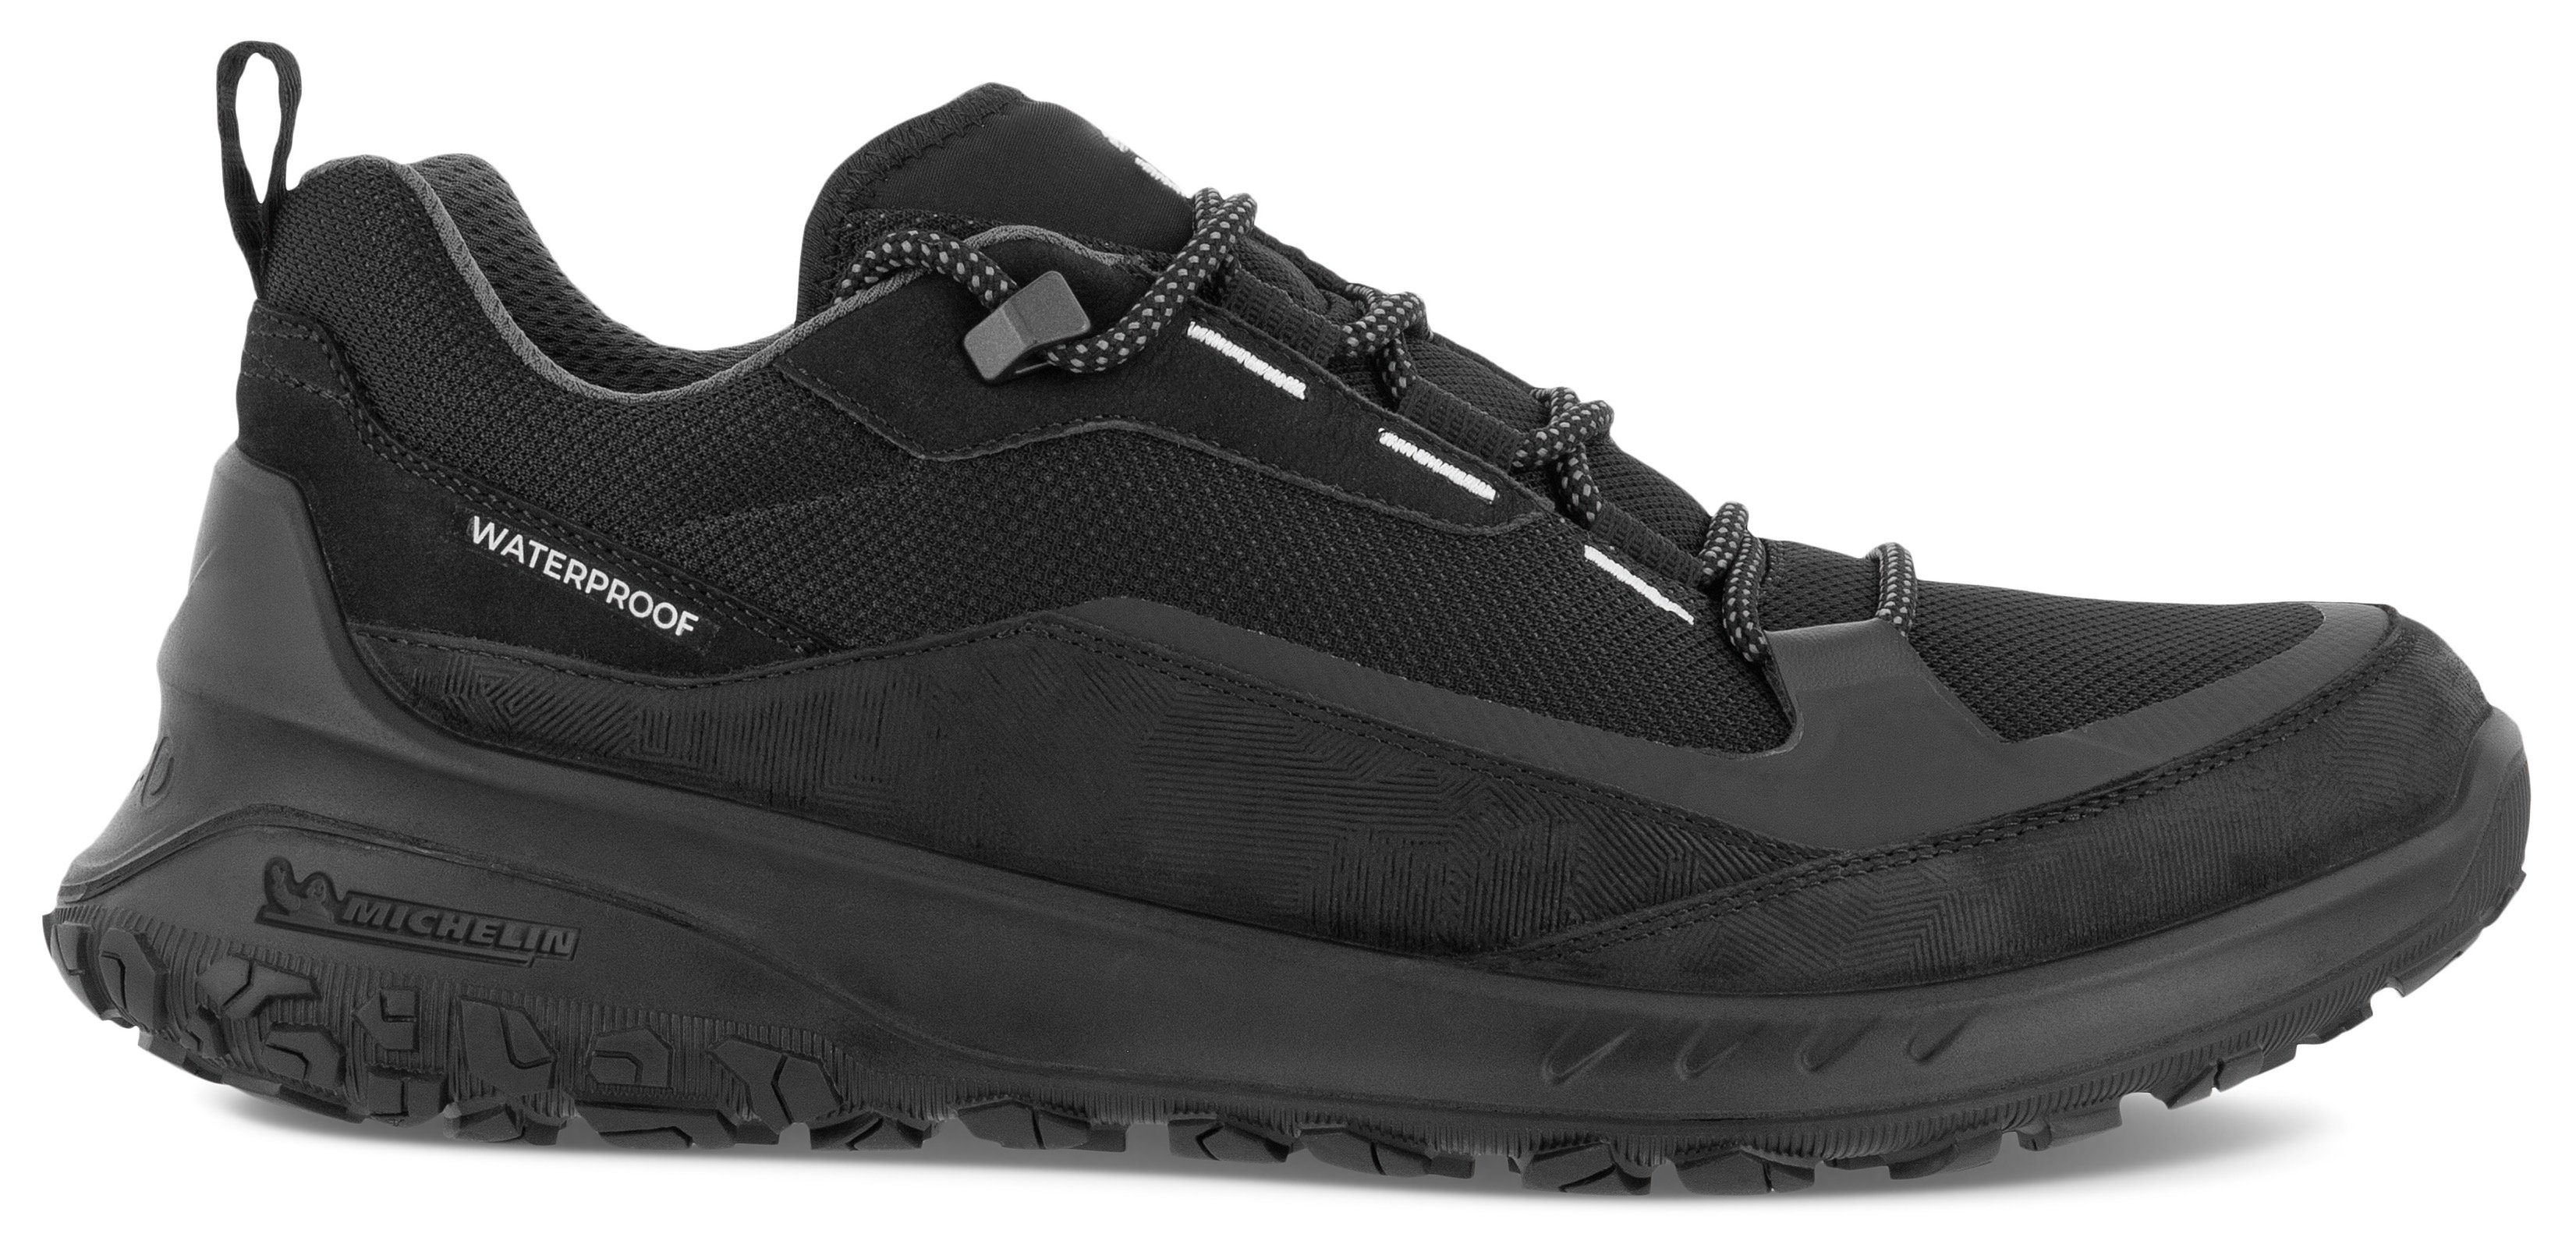 mit Ecco ULT-TRN Laufsohle M schwarz Sneaker sportive Michelin-Technologie